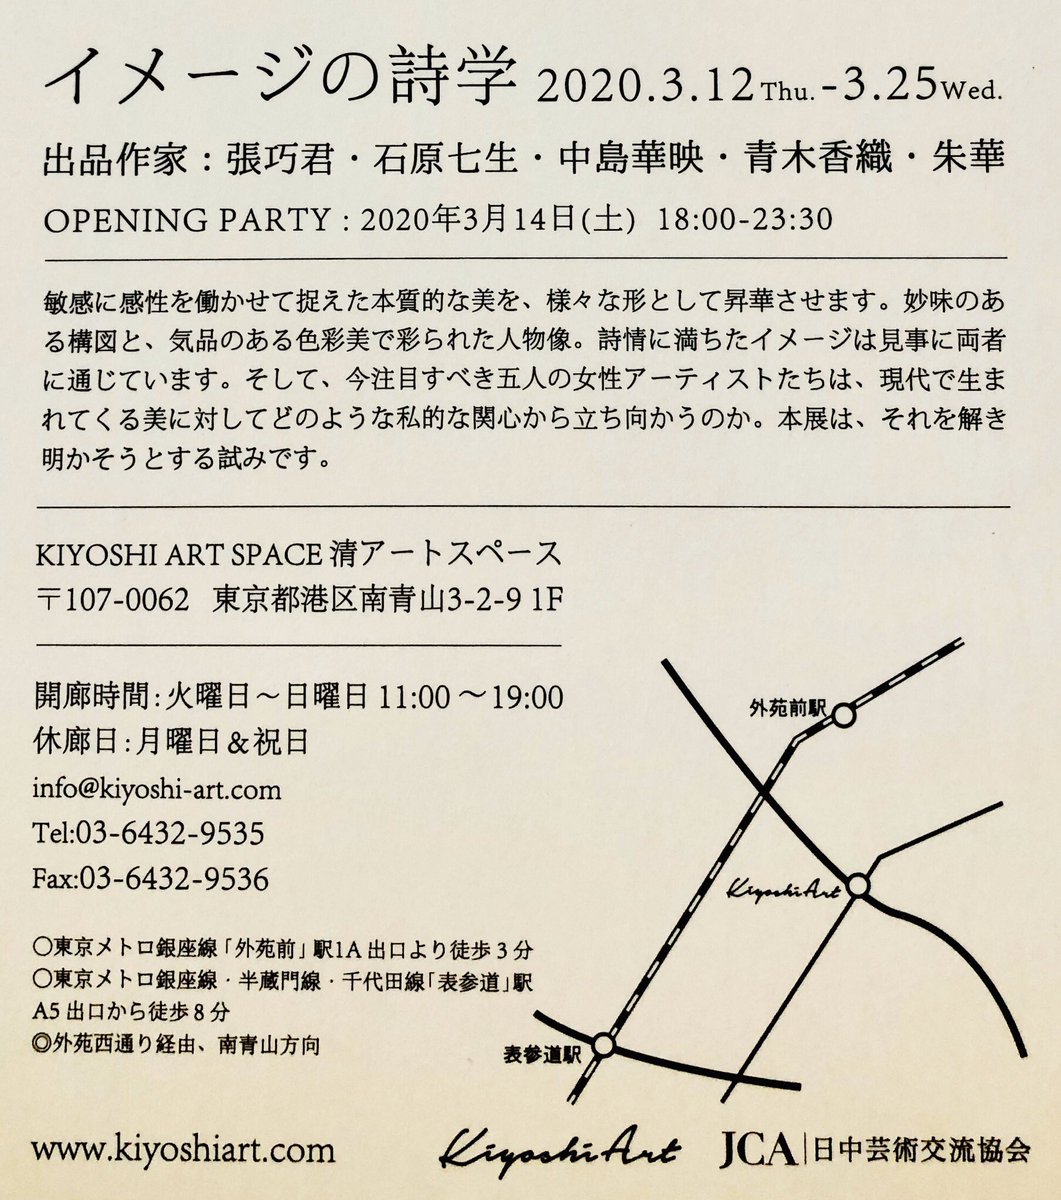 告知▽
「イメージの詩学」に参加致します。

2020年3月12日〜3月25日
清アートスペース
東京都港区南青山3-2-9 1F

ぜひ宜しくお願い致します…! 